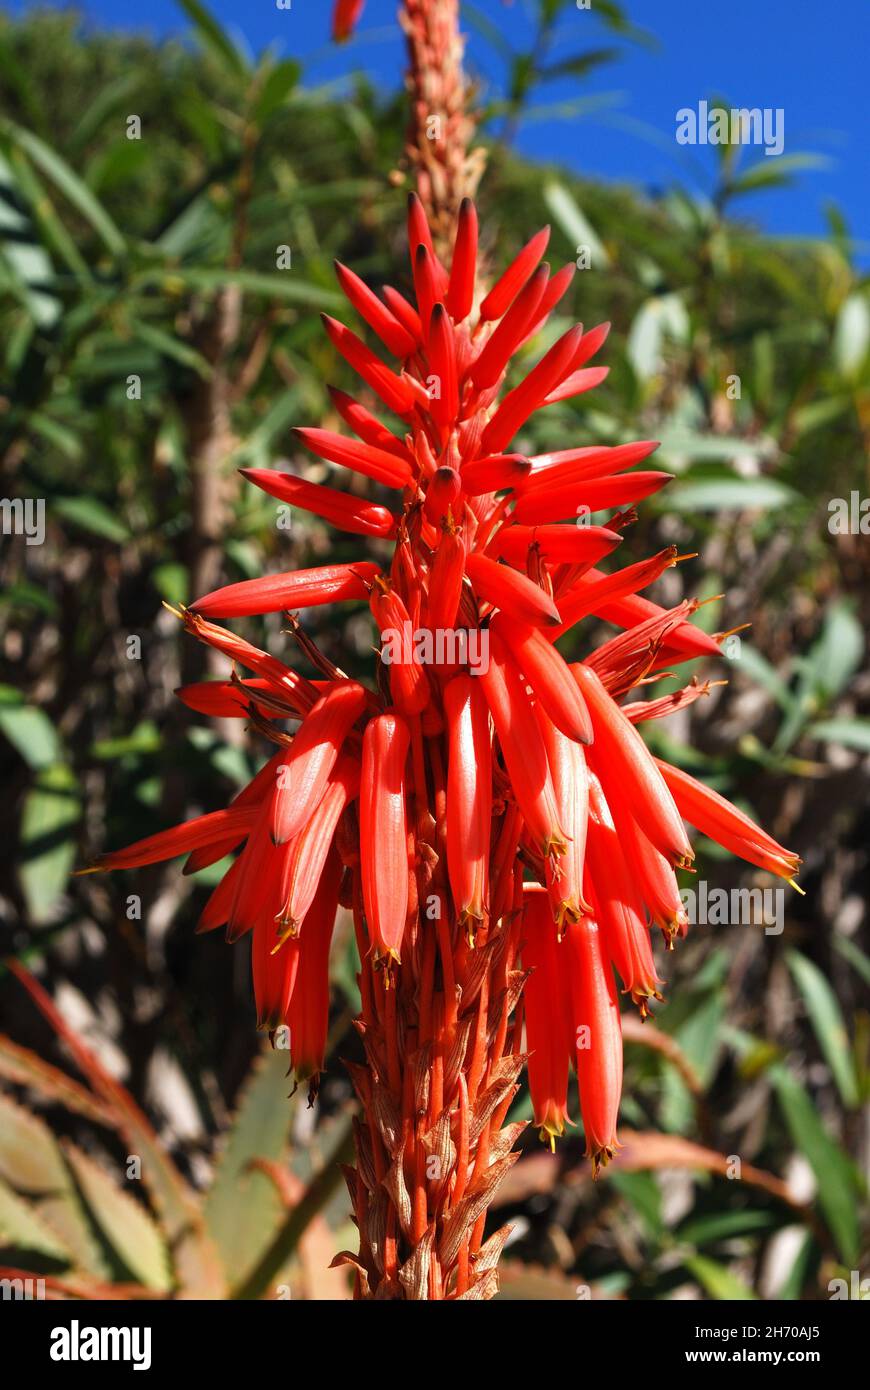 Aloe arborescens Variegata en pleine floraison, Miraflores, Costa del sol, Malaga province, Andalousie,Espagne, Europe Banque D'Images